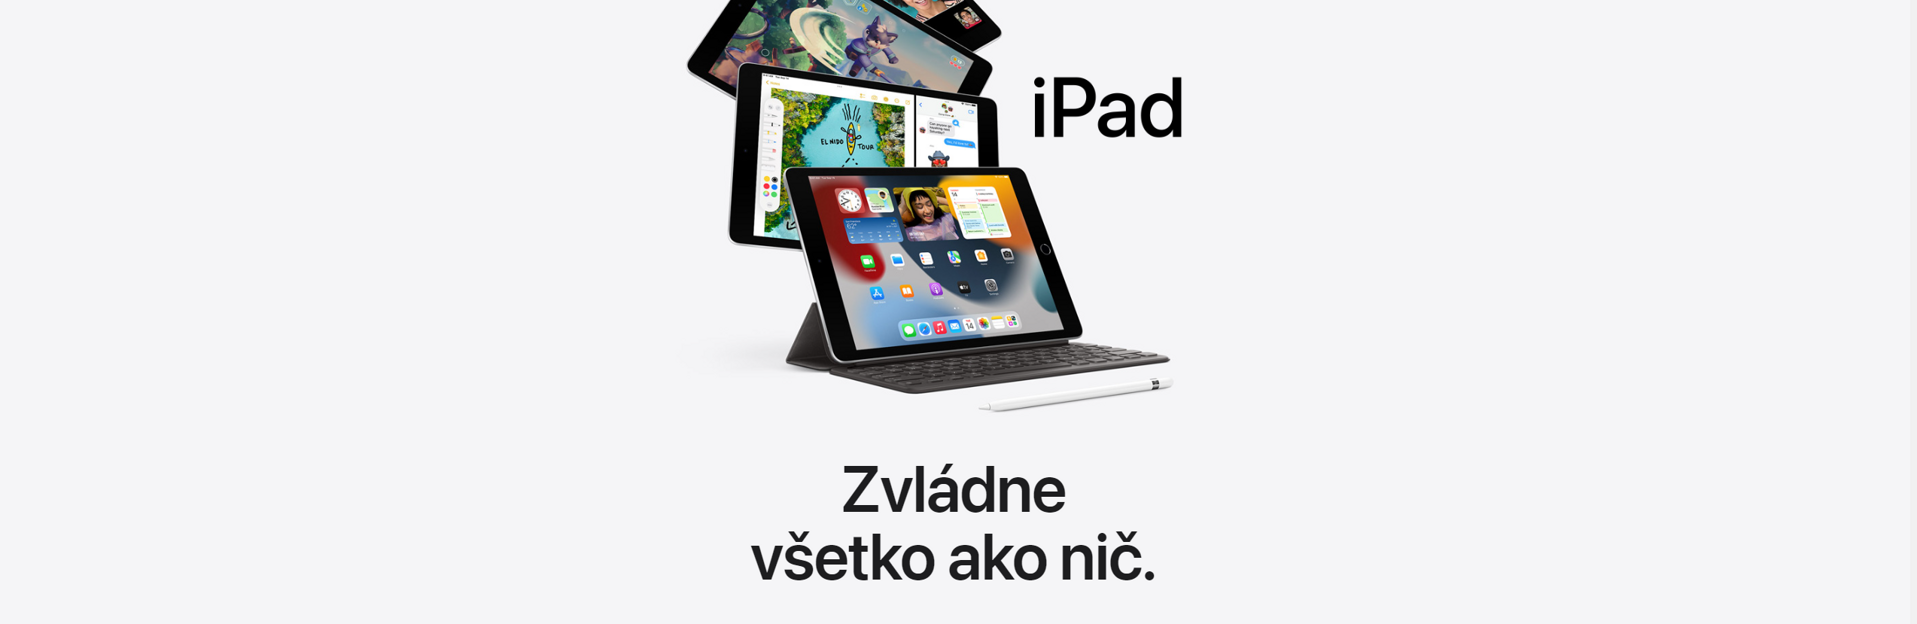 apple ipad banner itzoo